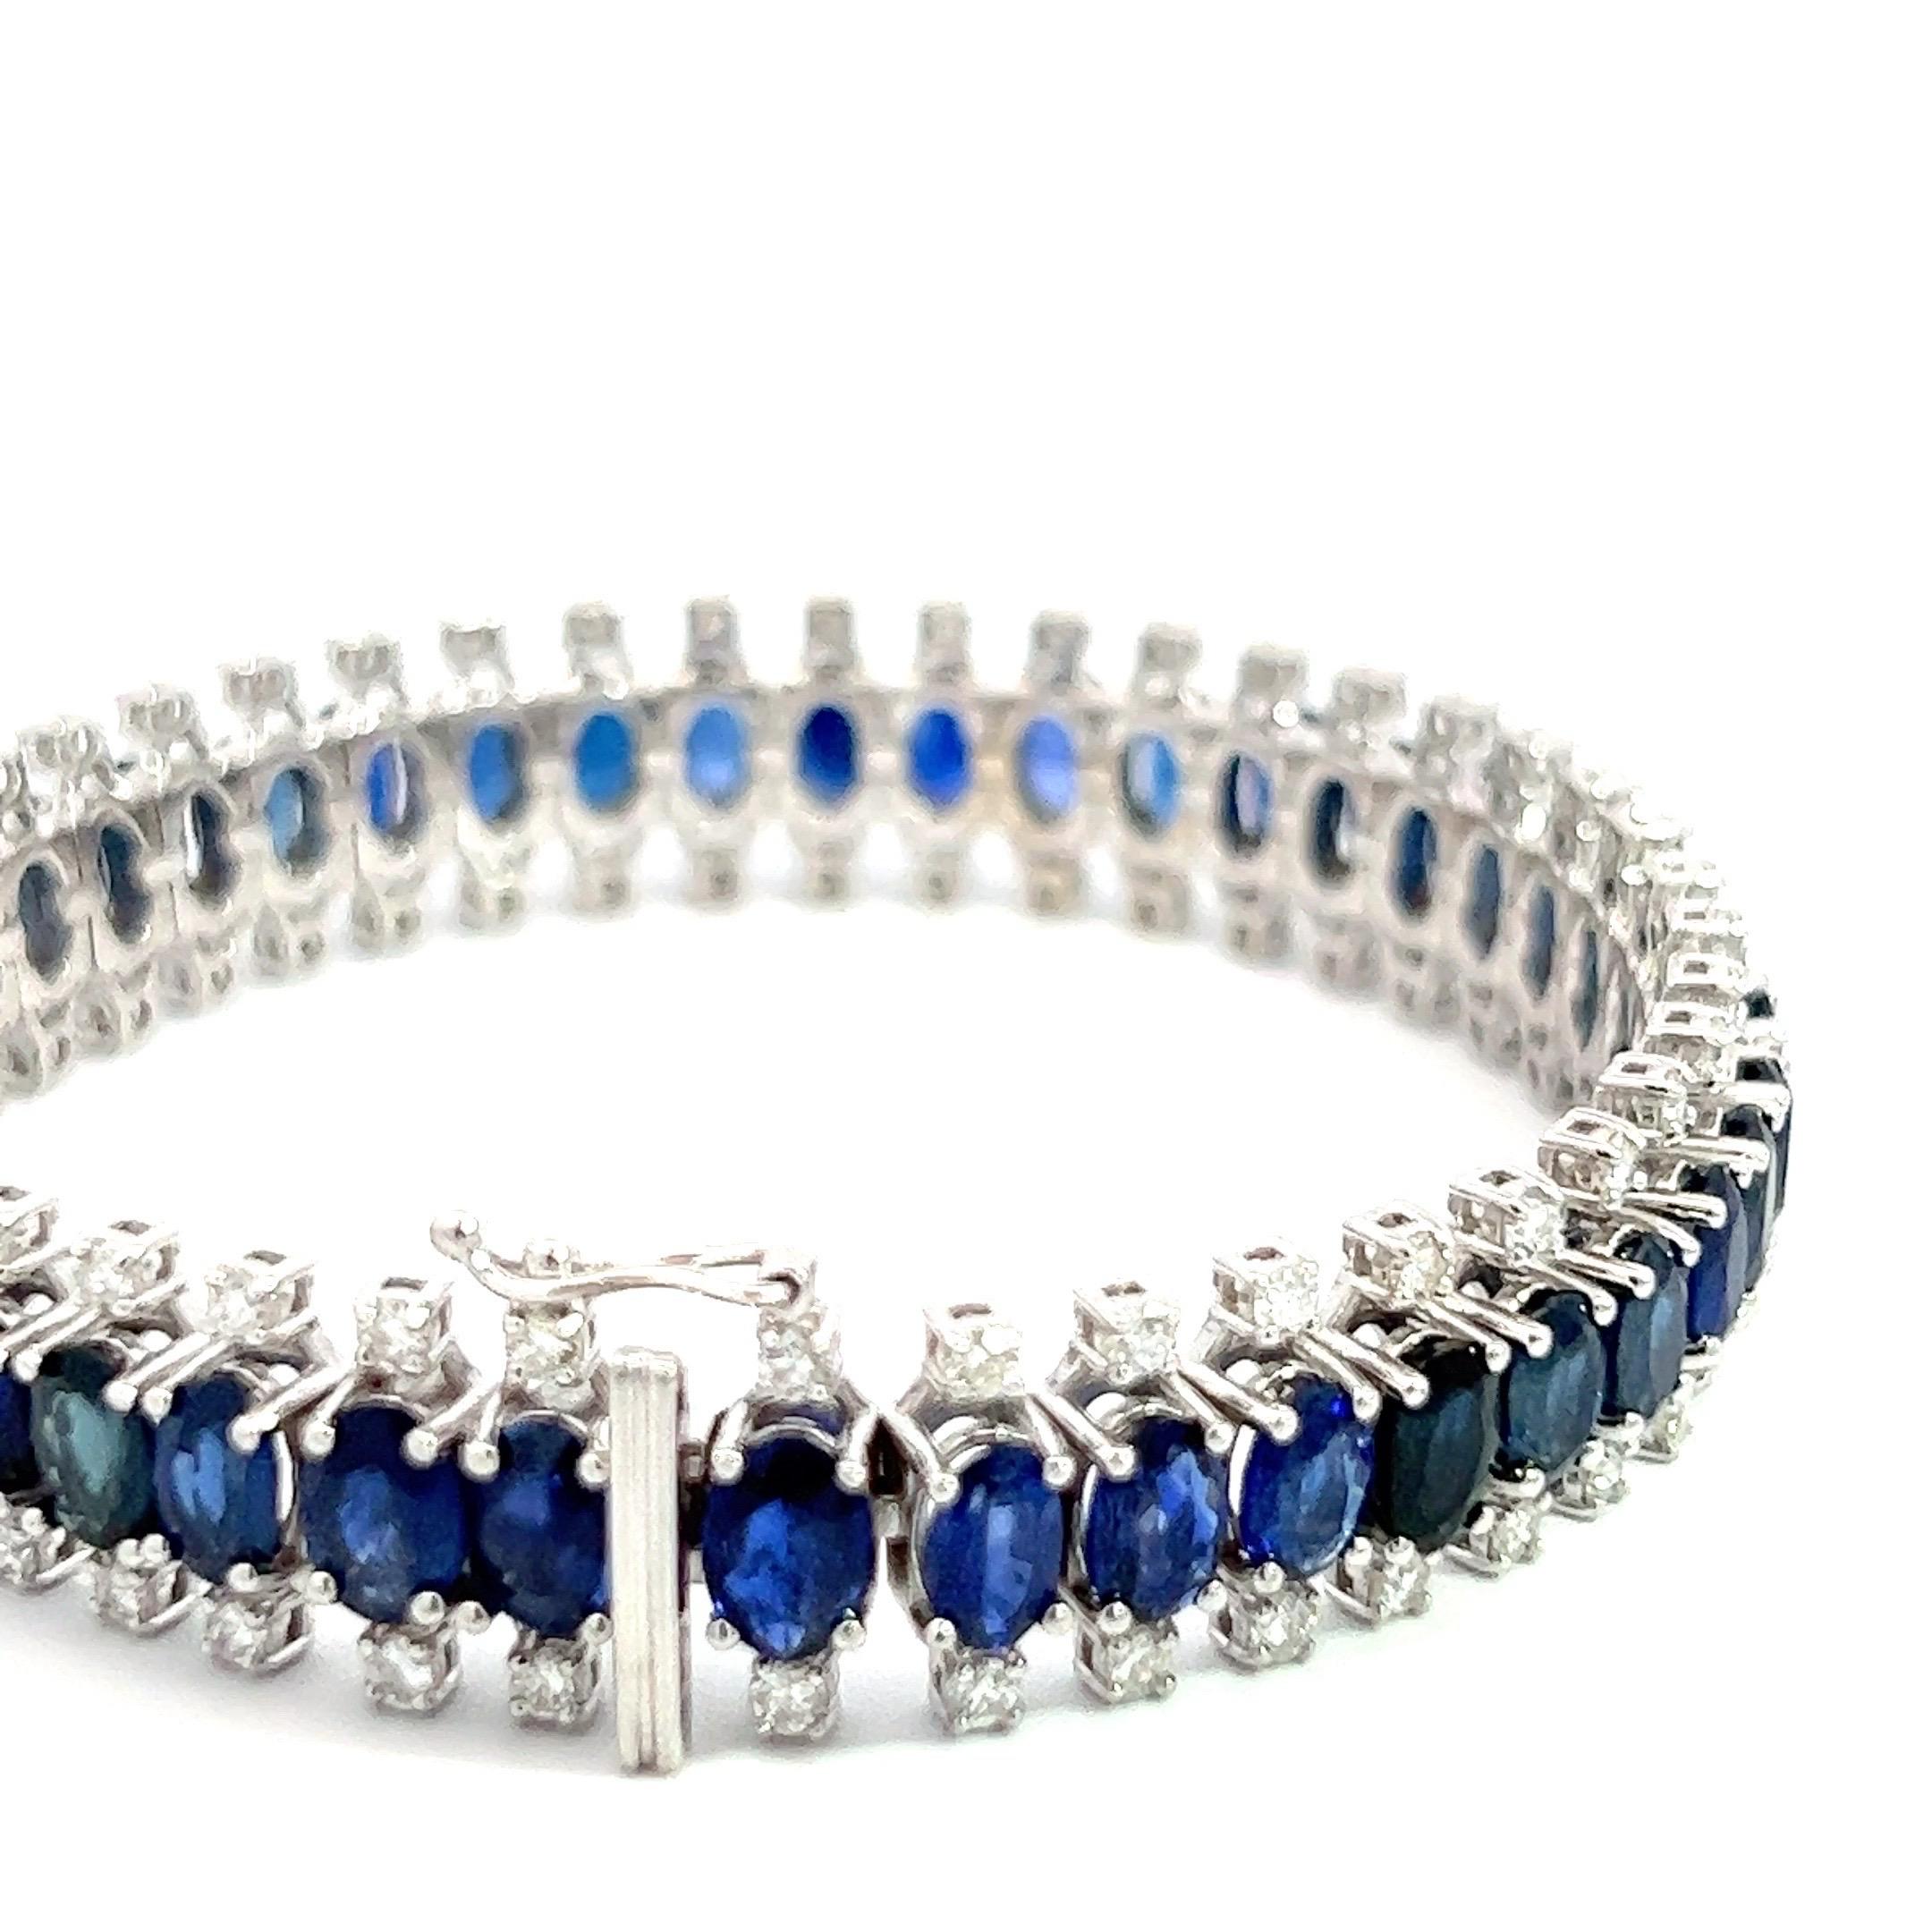 Dieses exquisite Armband ist ein wahrhaft fesselndes Meisterwerk, das die Faszination einzigartiger Diamanten und die königliche Schönheit königsblauer Saphire zu einer faszinierenden Einheit verbindet. Jeder einzelne Edelstein ist mit akribischer